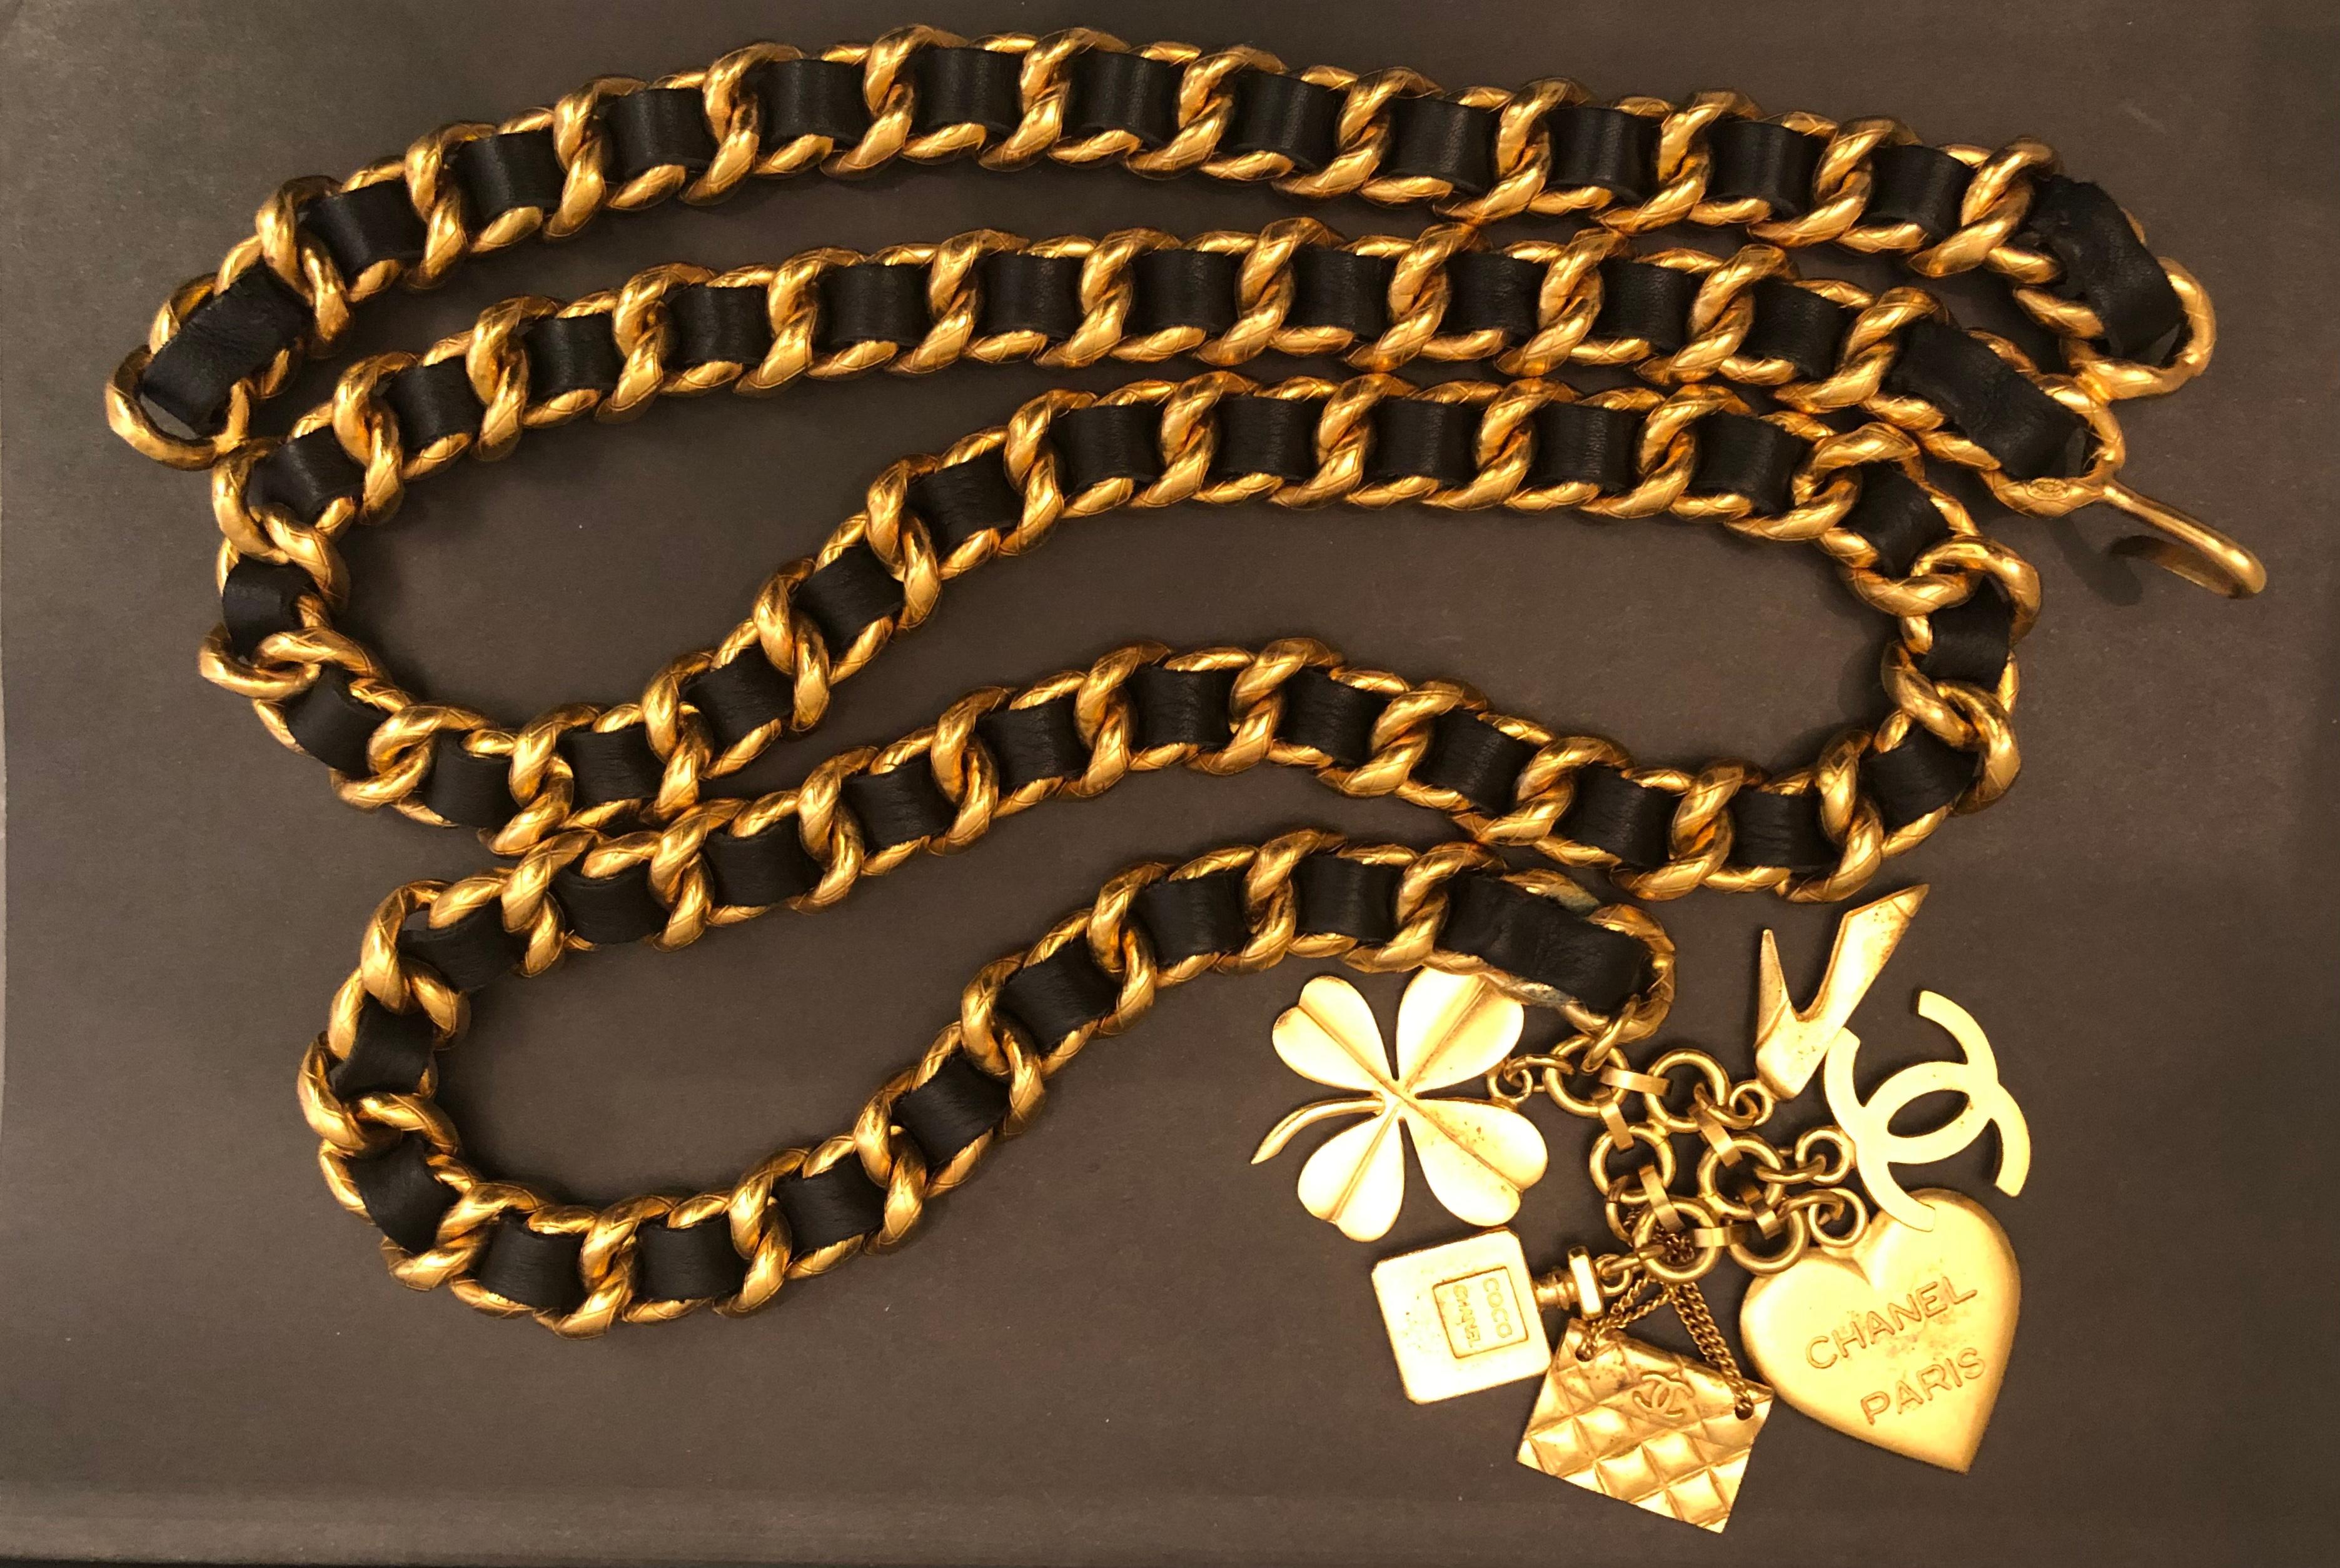 Dieser goldfarbene Vintage-Kettengürtel von Chanel besteht aus einer robusten goldfarbenen Kette mit Steppmuster, die mit schwarzem Leder verflochten ist und sechs ikonische Chanel-Charms aufweist. Chanel 95A gestempelt, hergestellt in Frankreich.